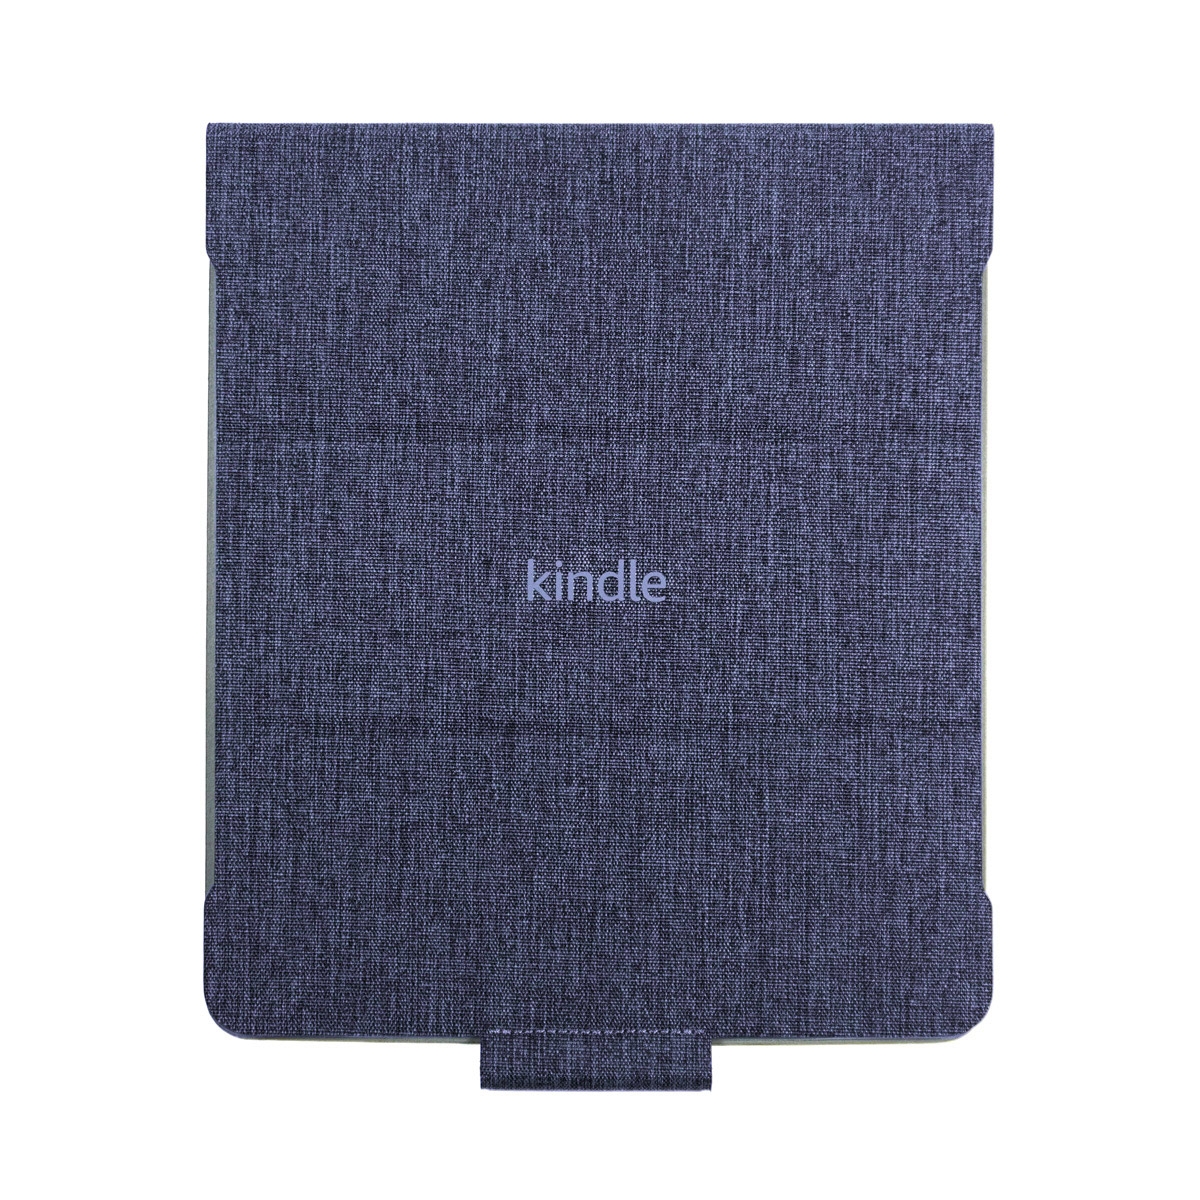 Oryginalne etui do czytnika Kindle Scribe 10,2 cala w kolorze niebieskim